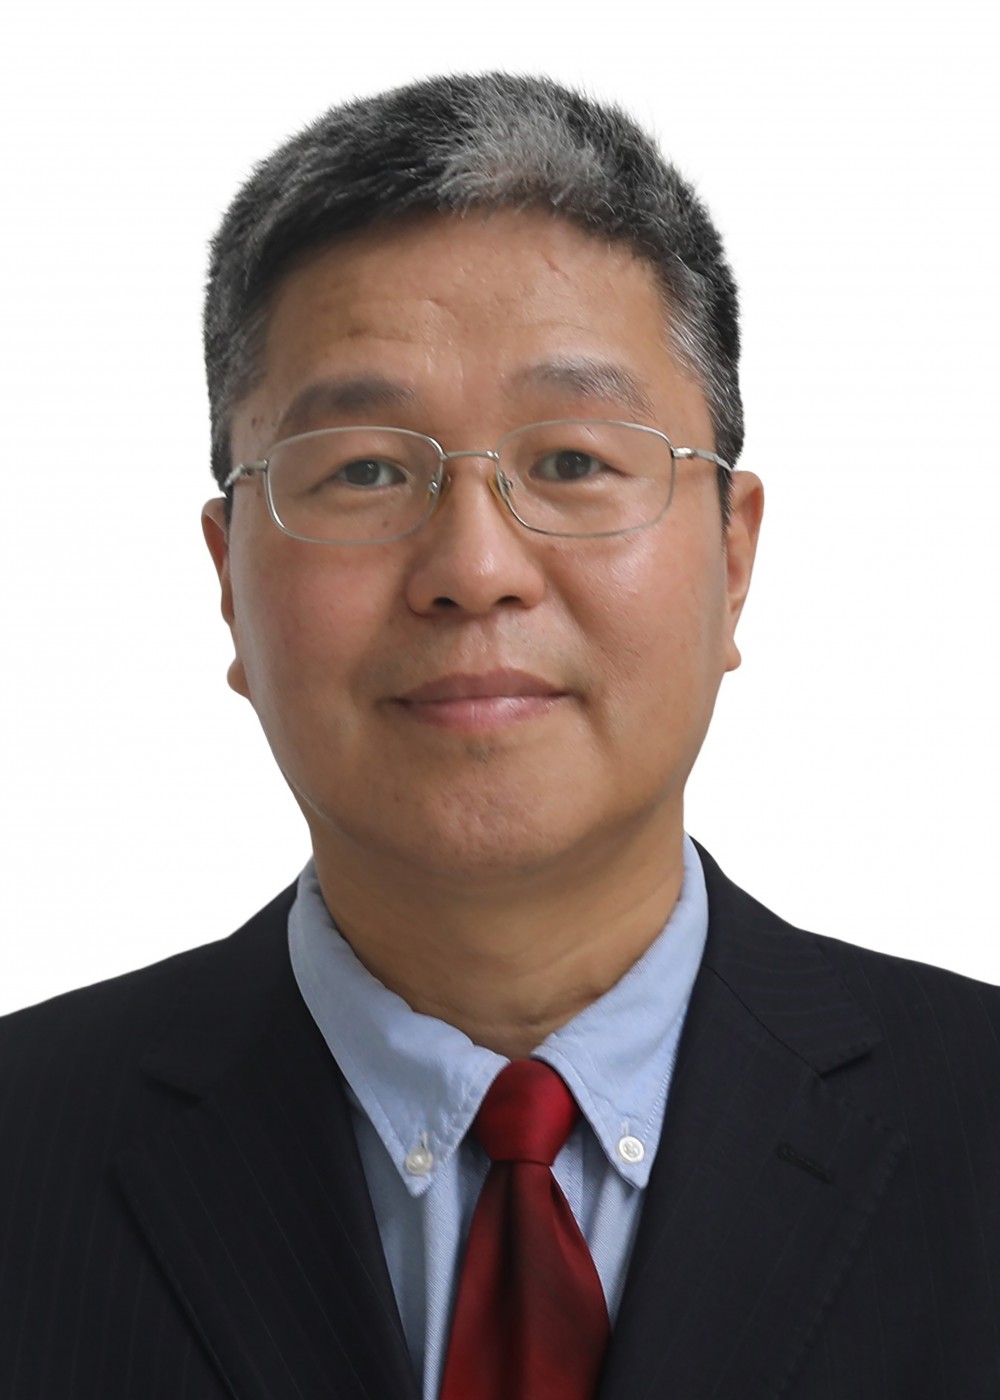 Yiqiang Wang